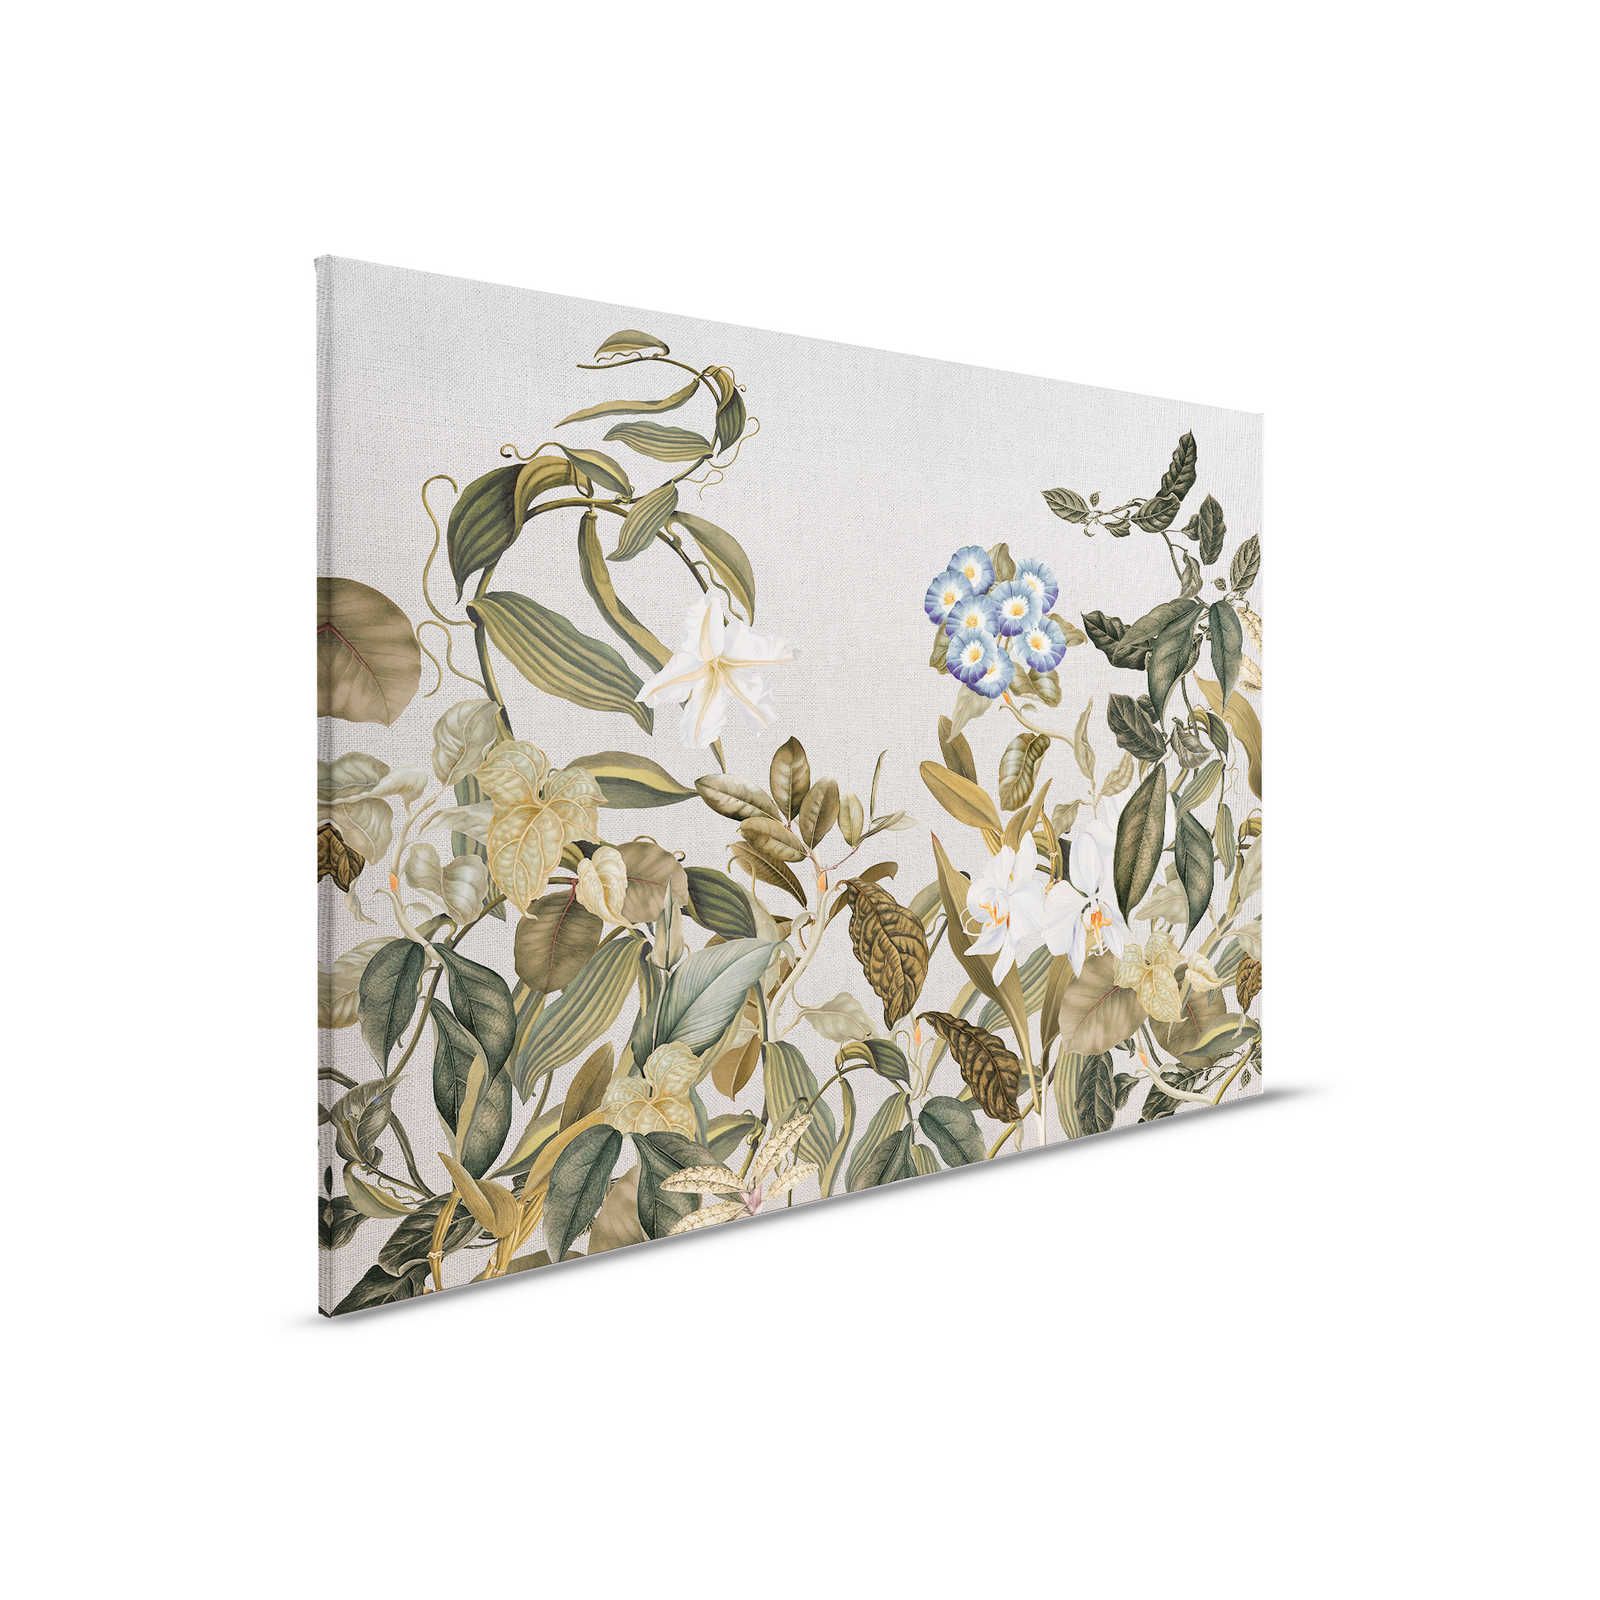 Tableau toile style botanique fleurs, feuilles & look textile - 0,90 m x 0,60 m
